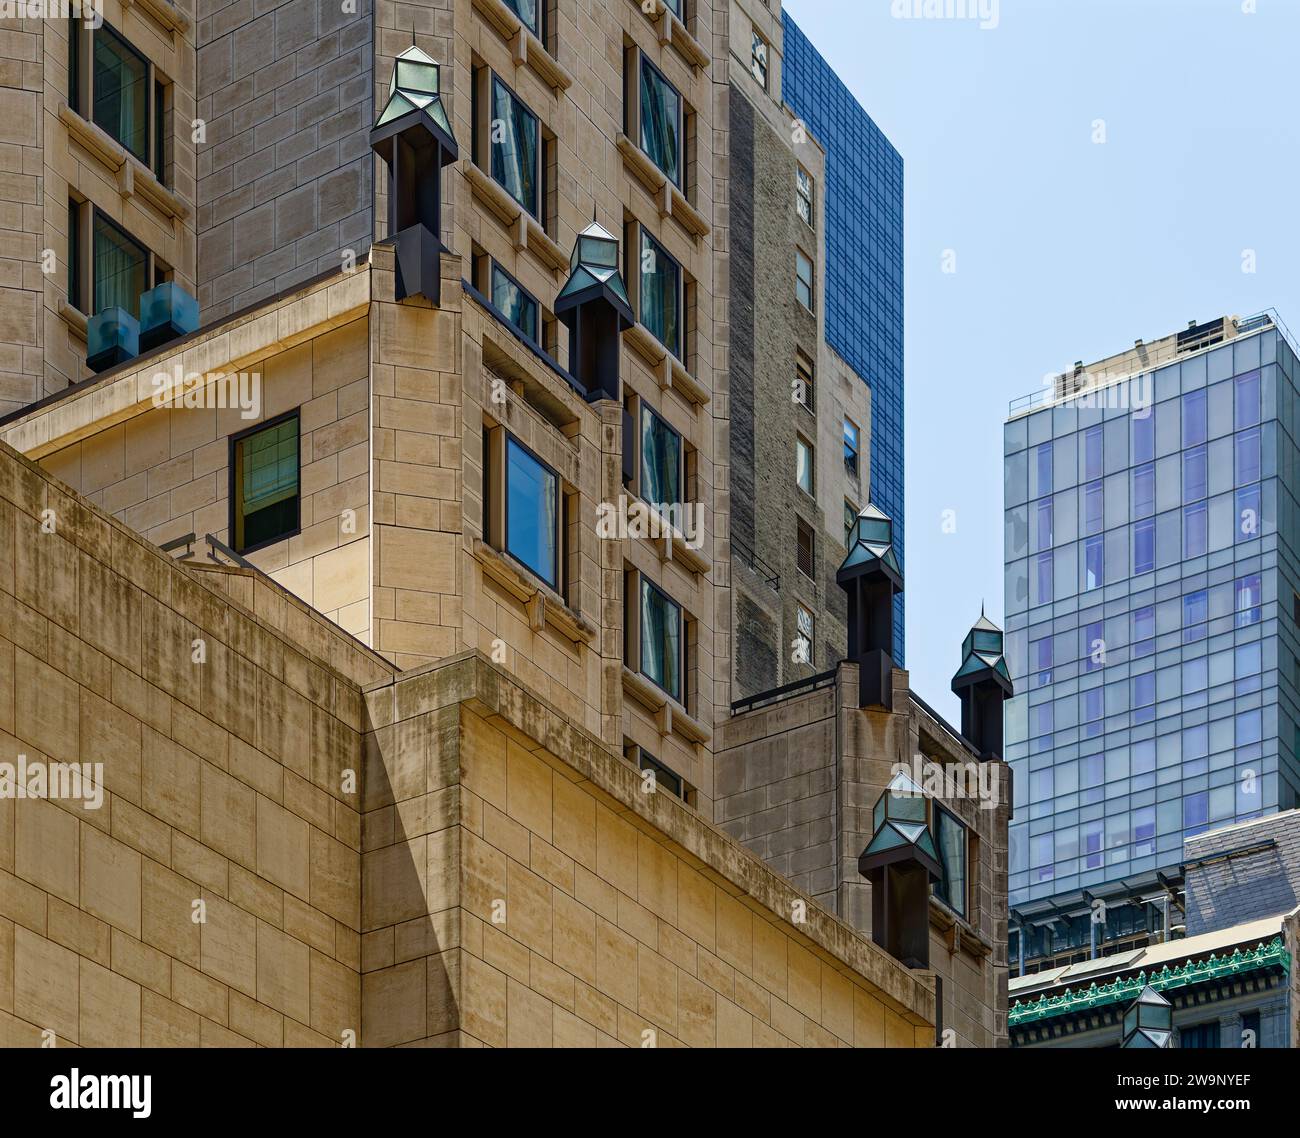 Moderne Laternen betonen die Rückschläge des von I.M. Pei entworfenen Four Seasons Hotel Tower an der 57 E 58th Street in Midtown Manhattan. Stockfoto